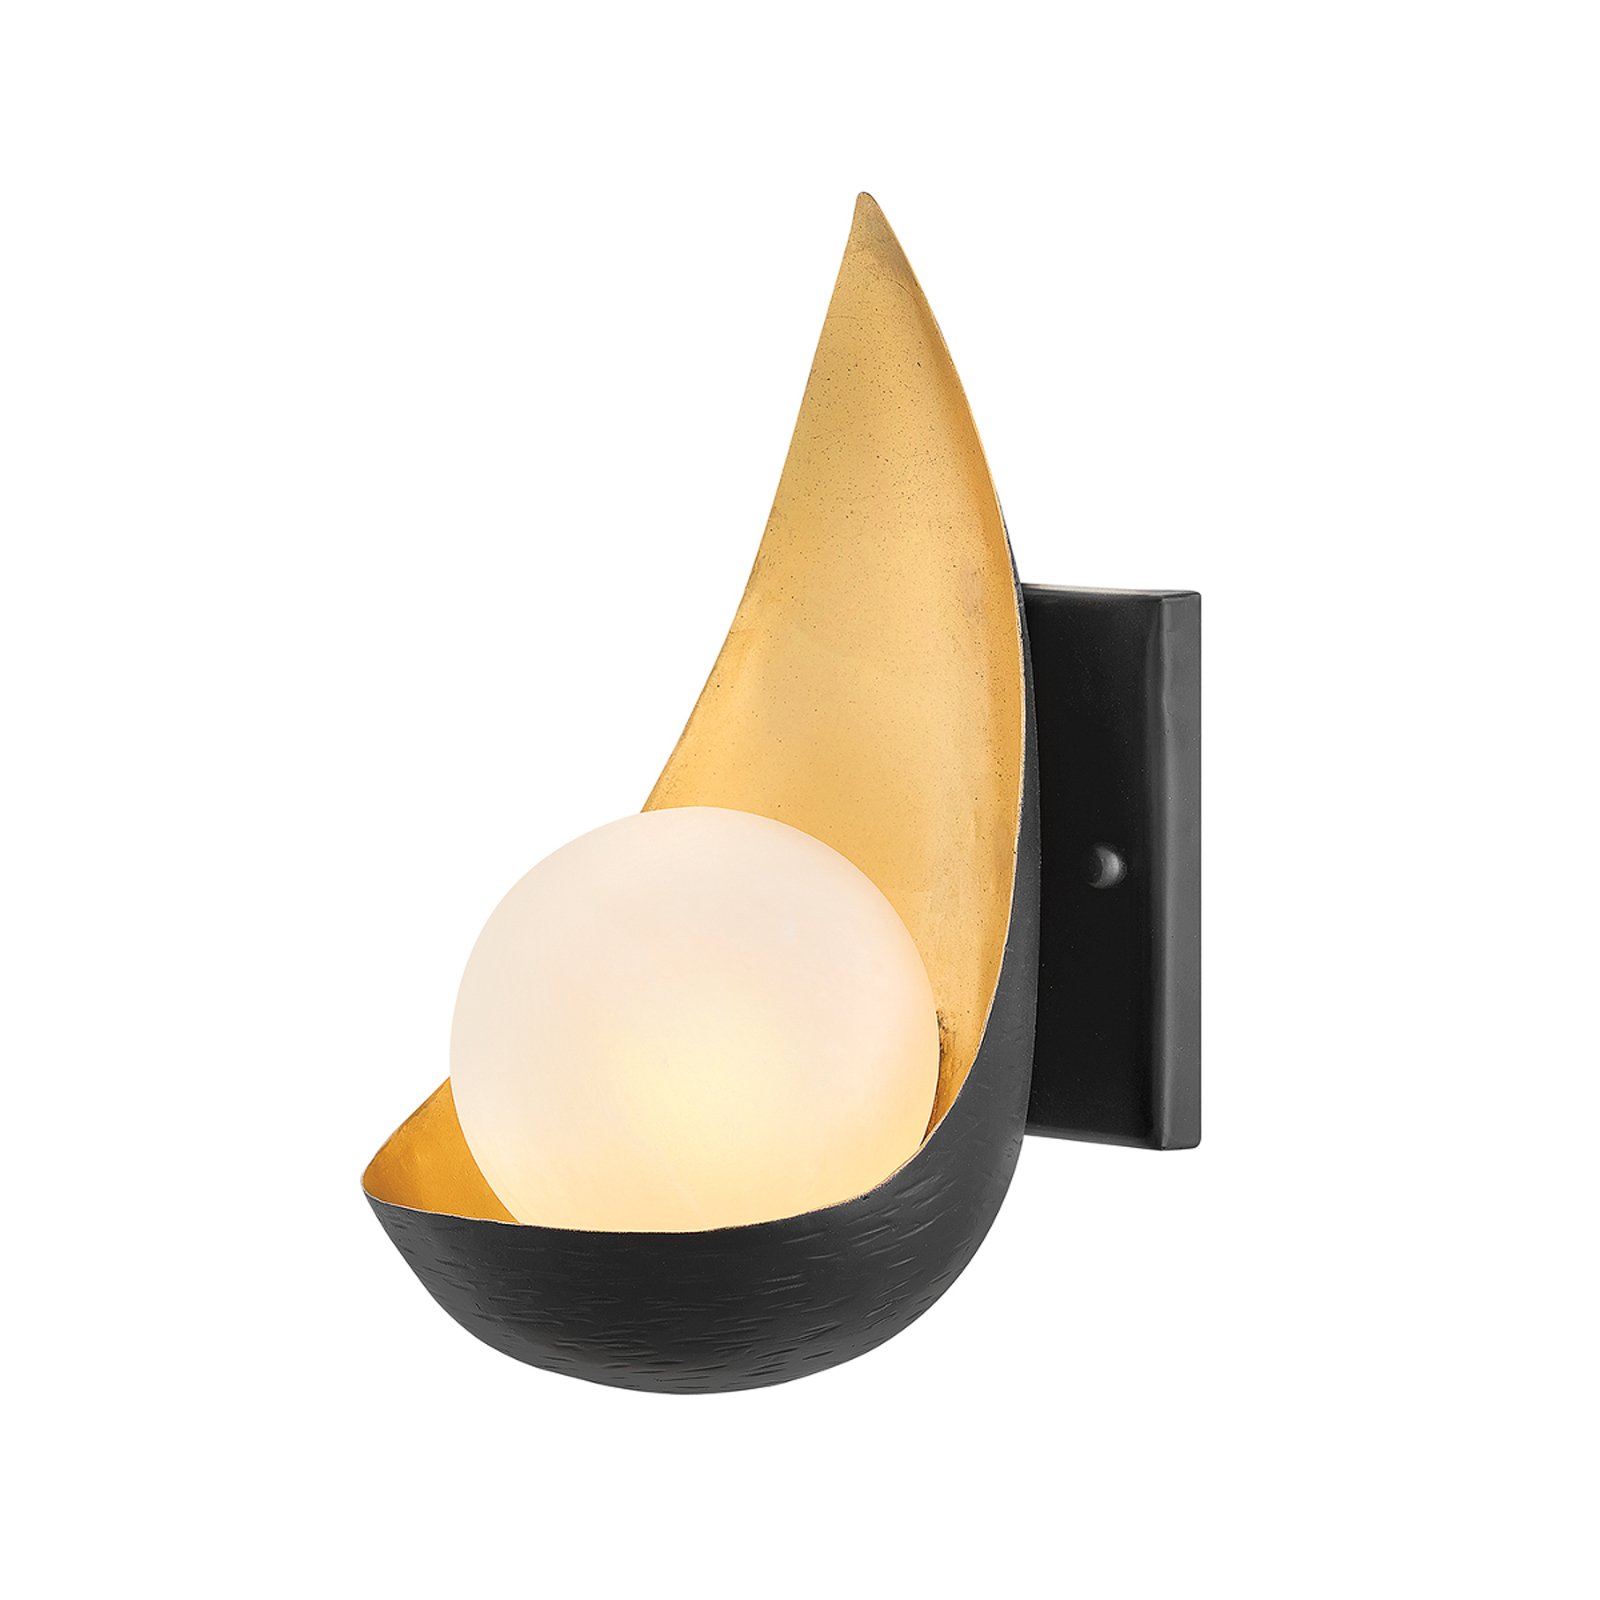 Vägglampa Ren, 1 lampa, svart/guld